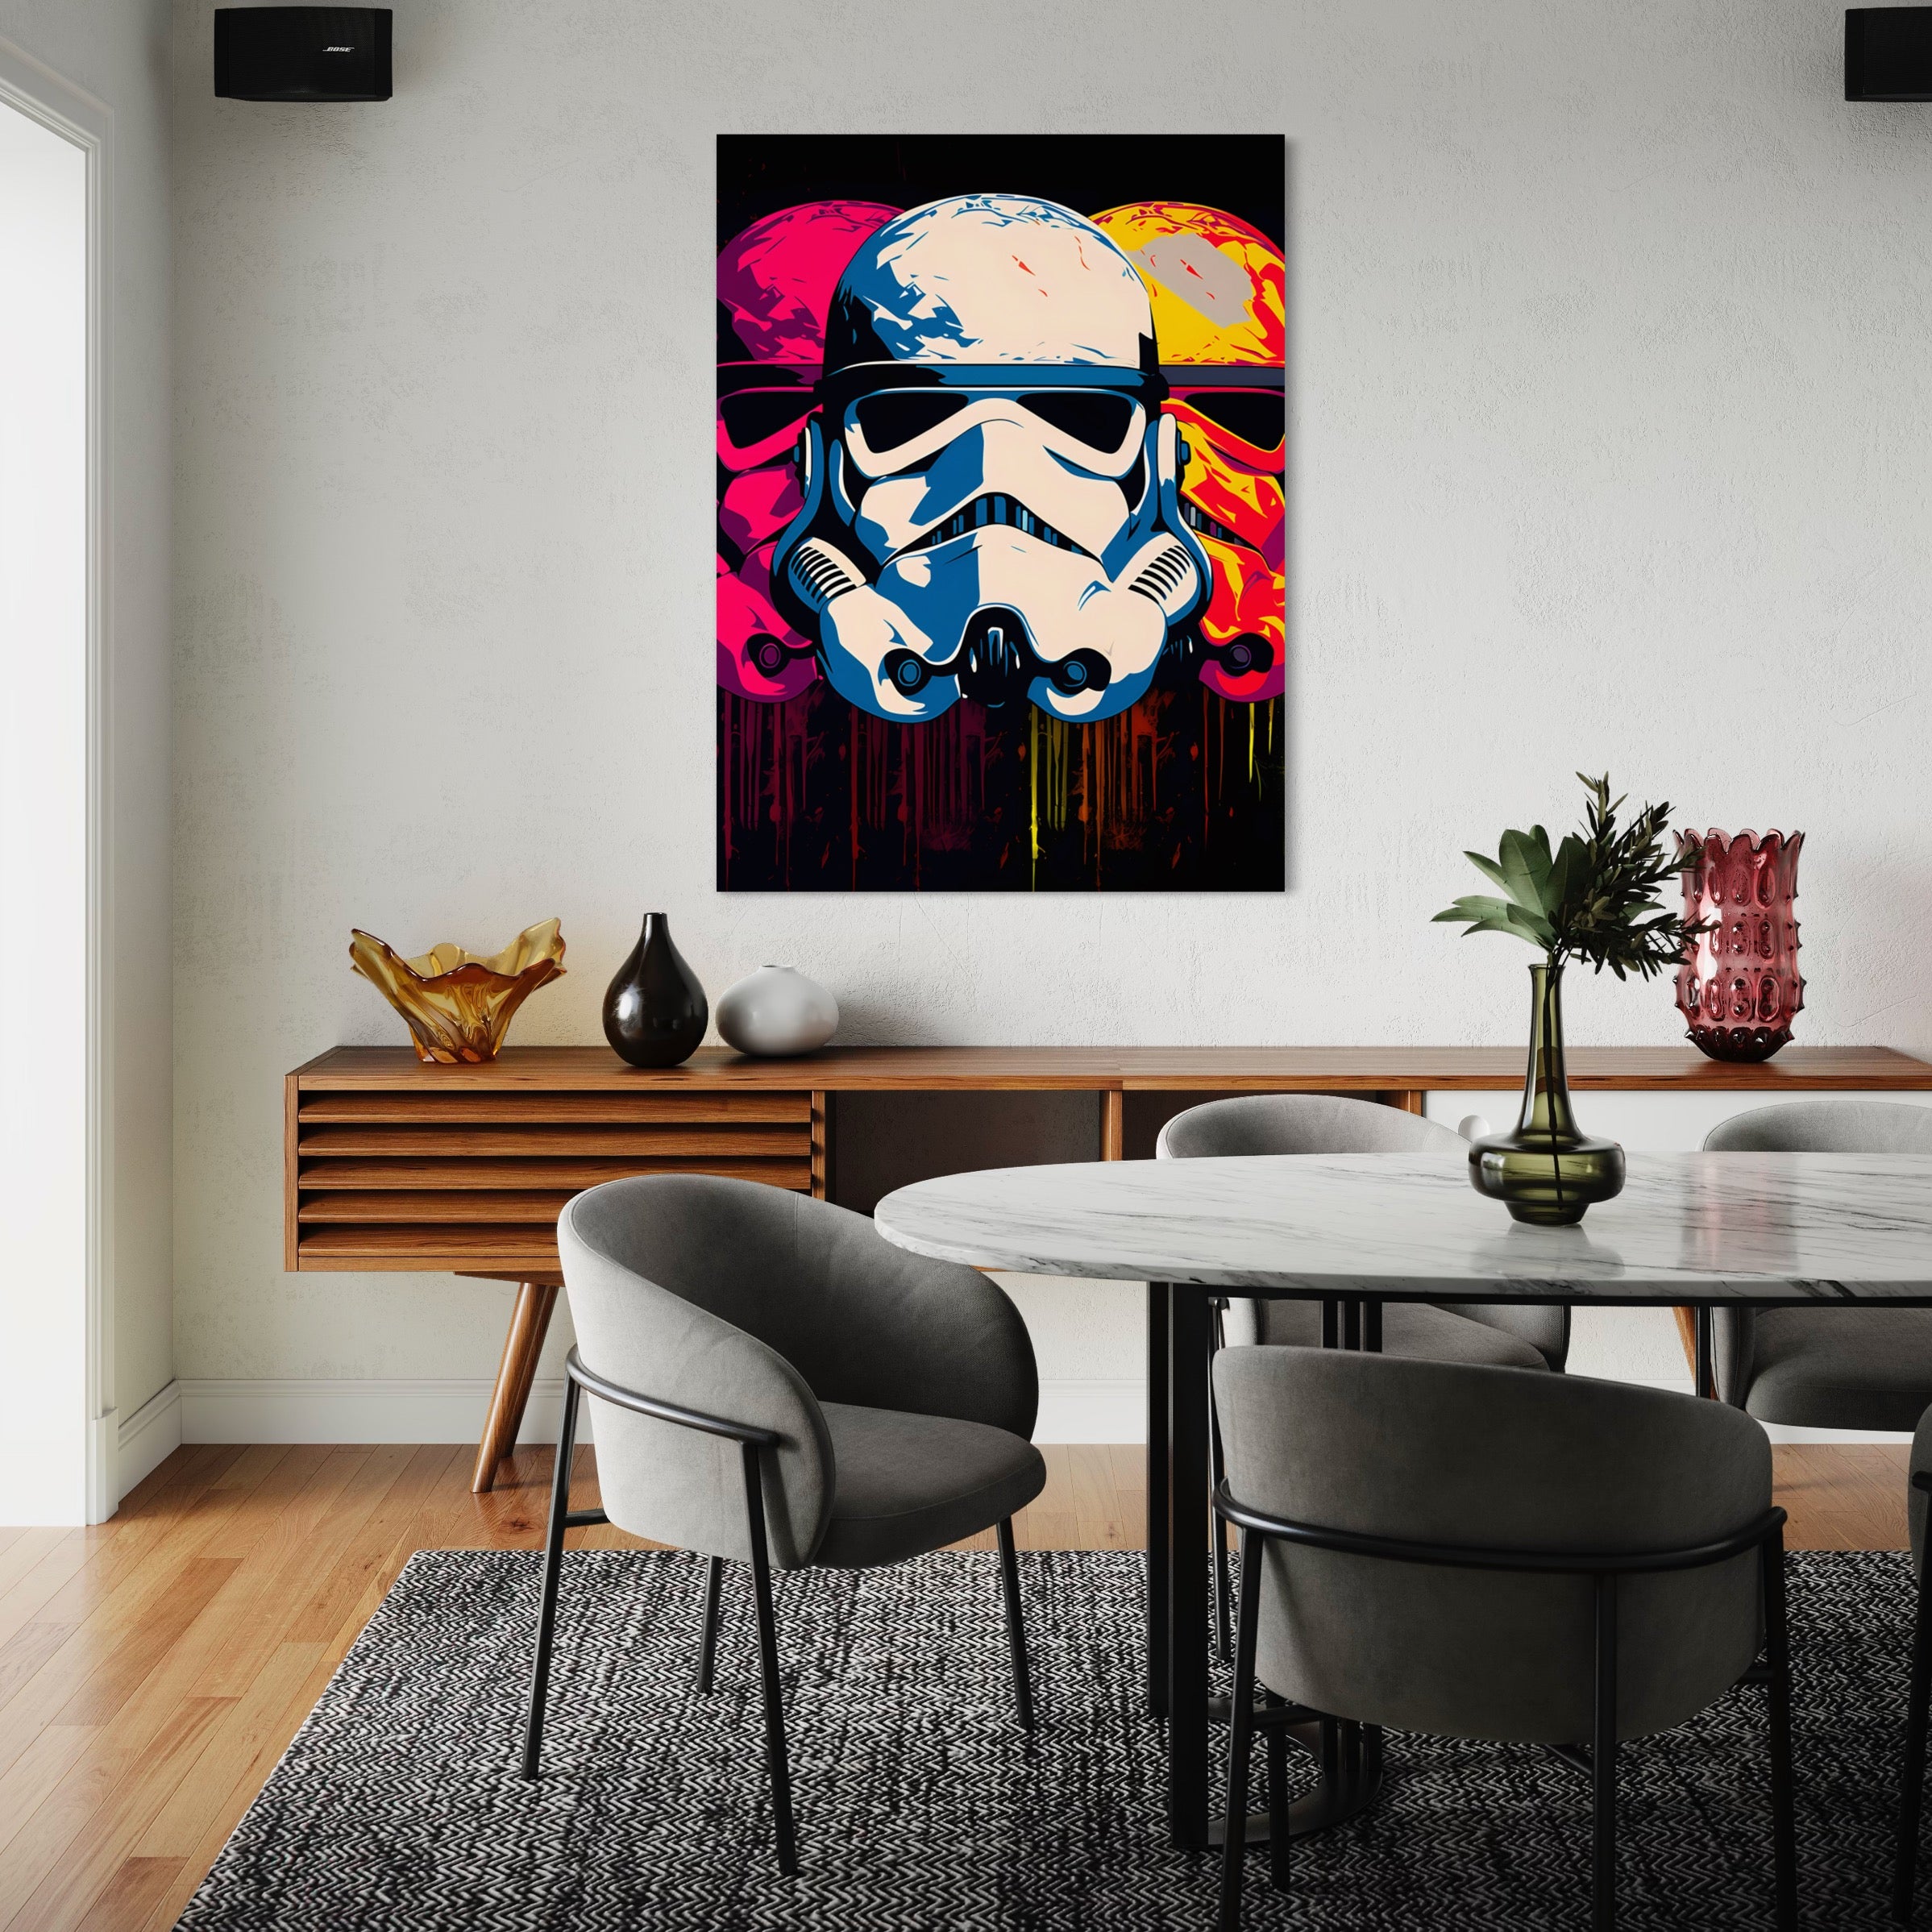 Tableau Star Wars - Stormtrooper Pop Art - Décoration Murale Colorée - Fabulartz.fr 